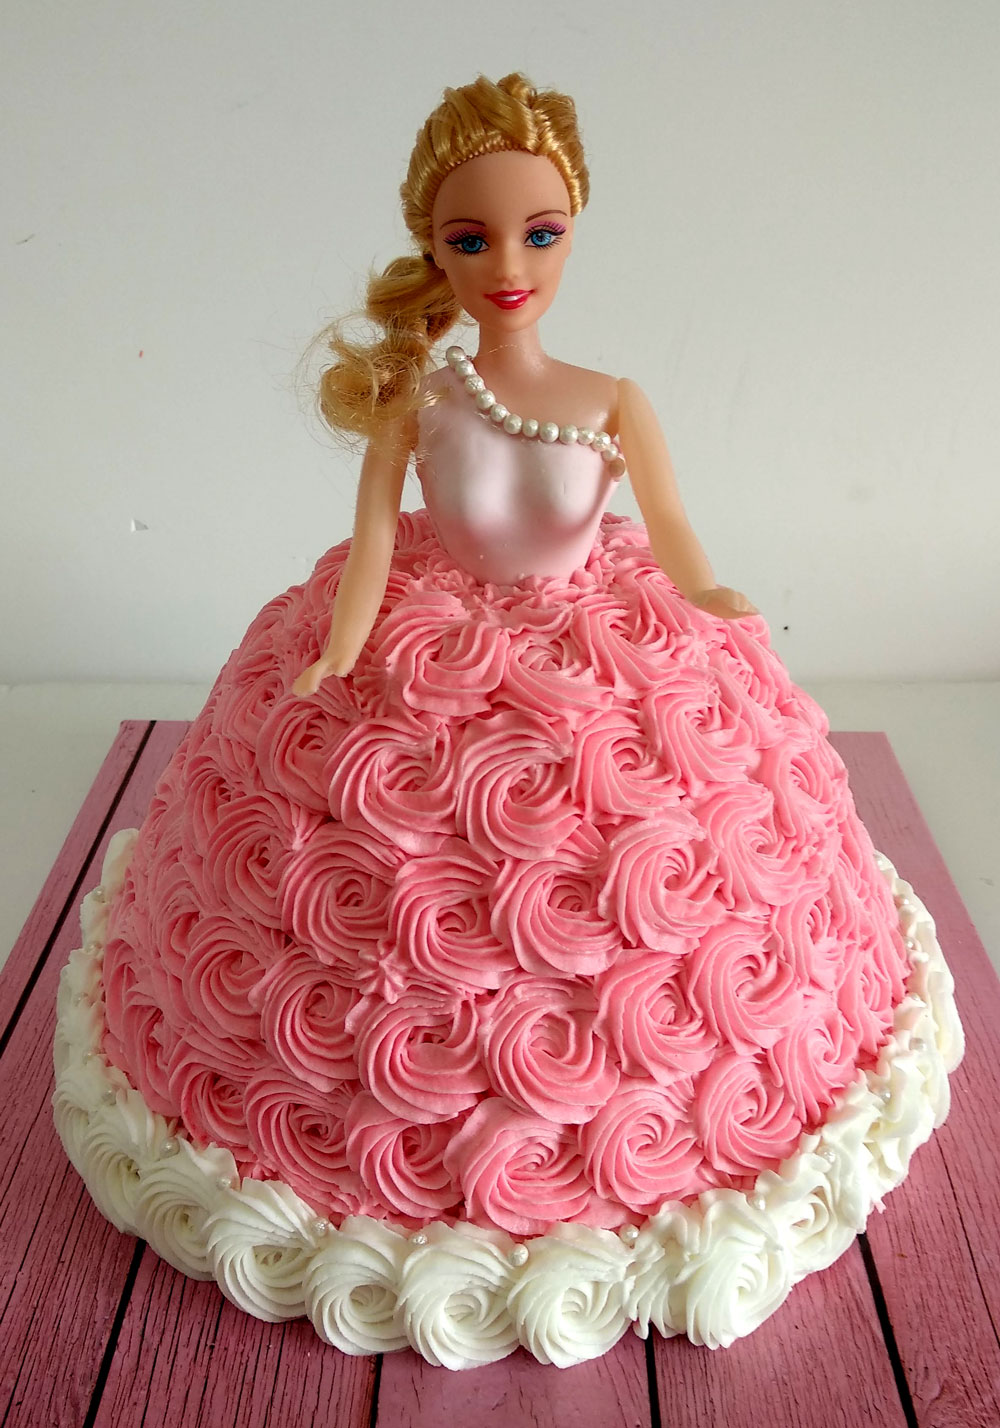 instagram. princess cake. 